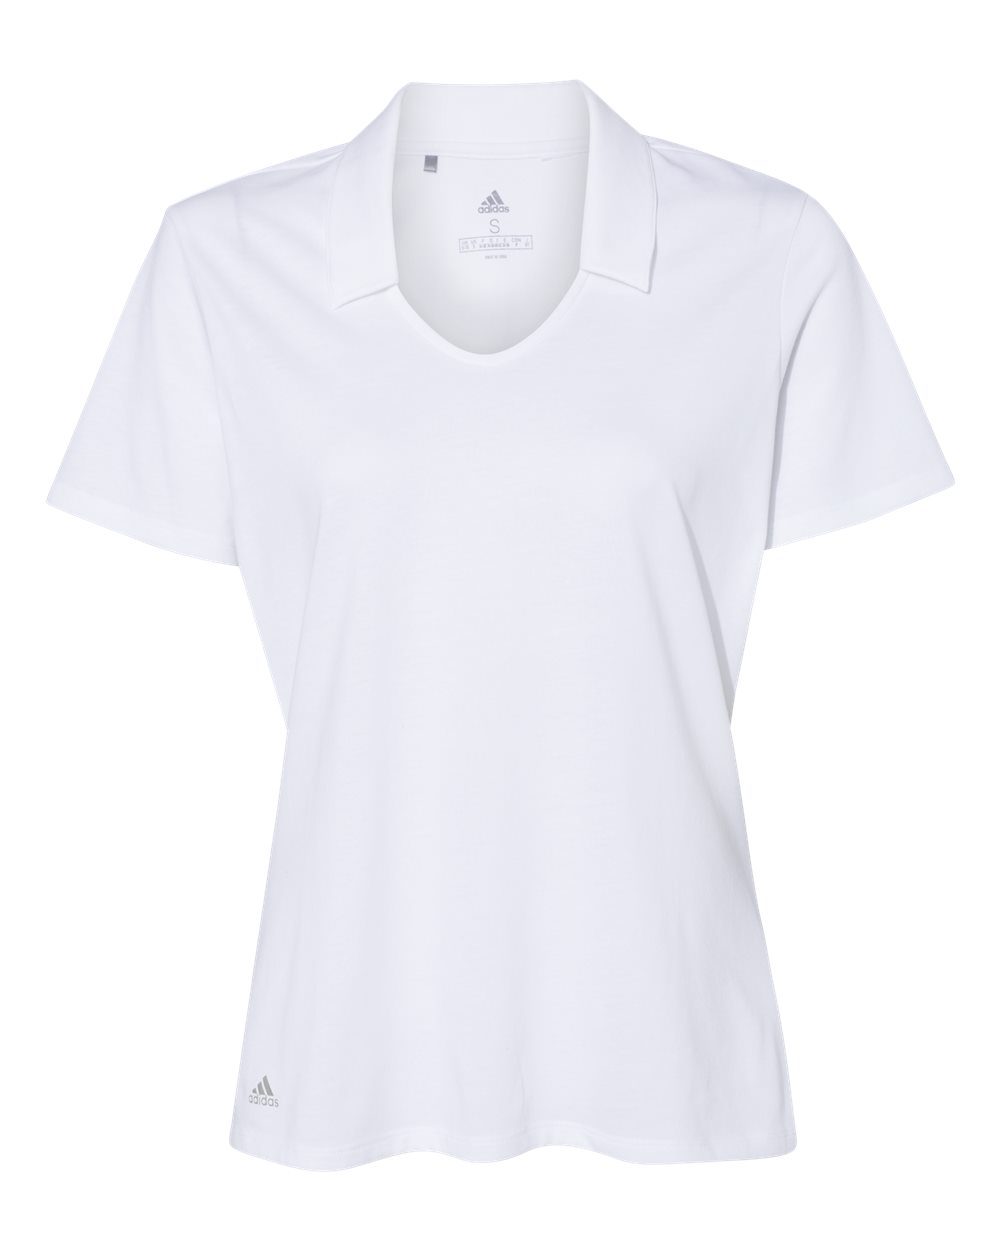 Womens Cotton Blend Sport Shirt-Adidas